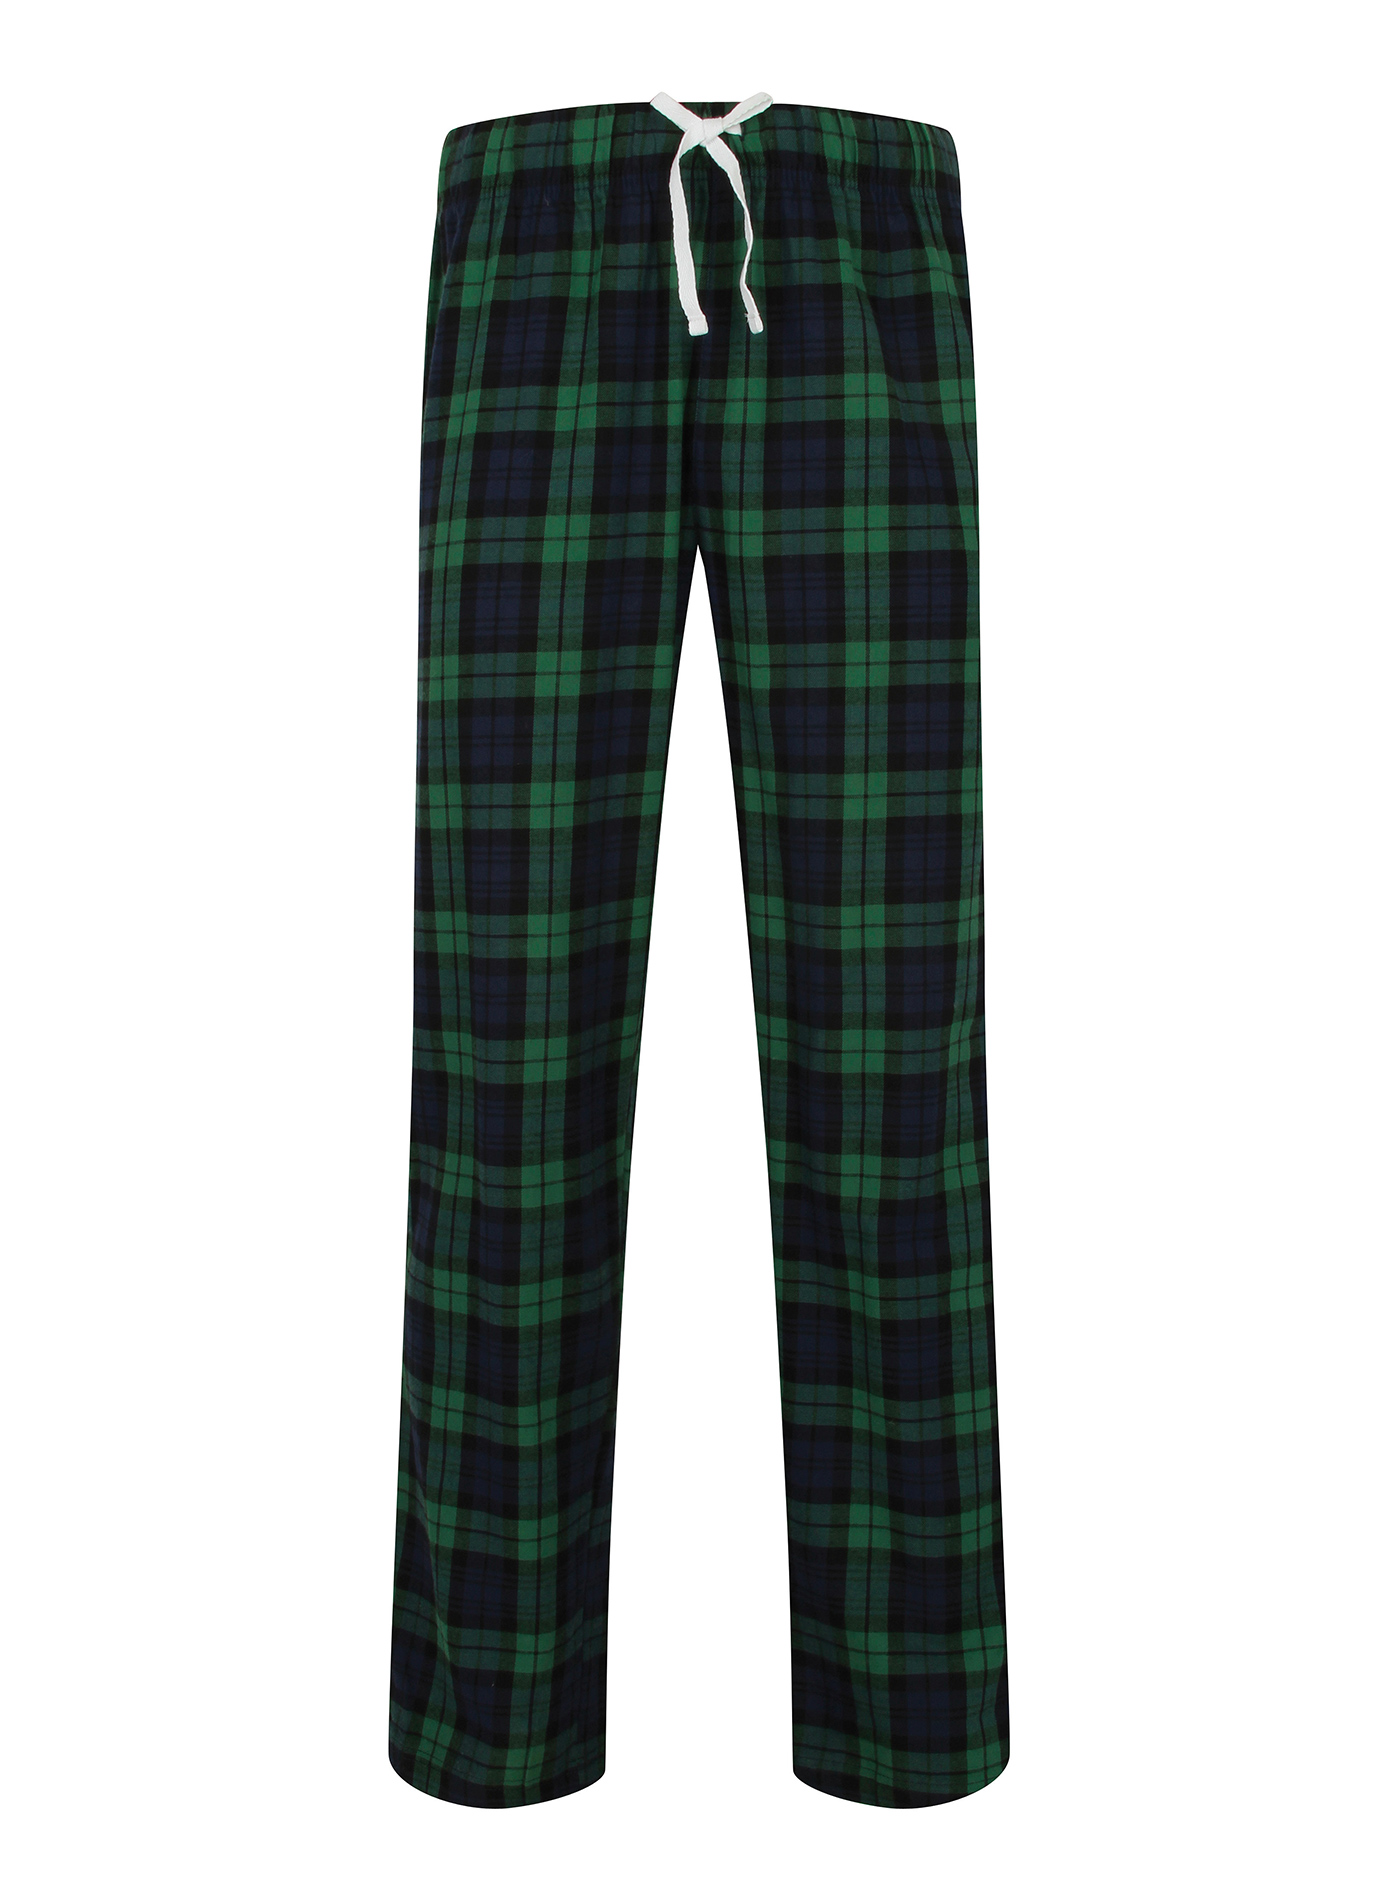 Pánské kalhoty na spaní Skinnifit Tartan - Zelená a modrá M